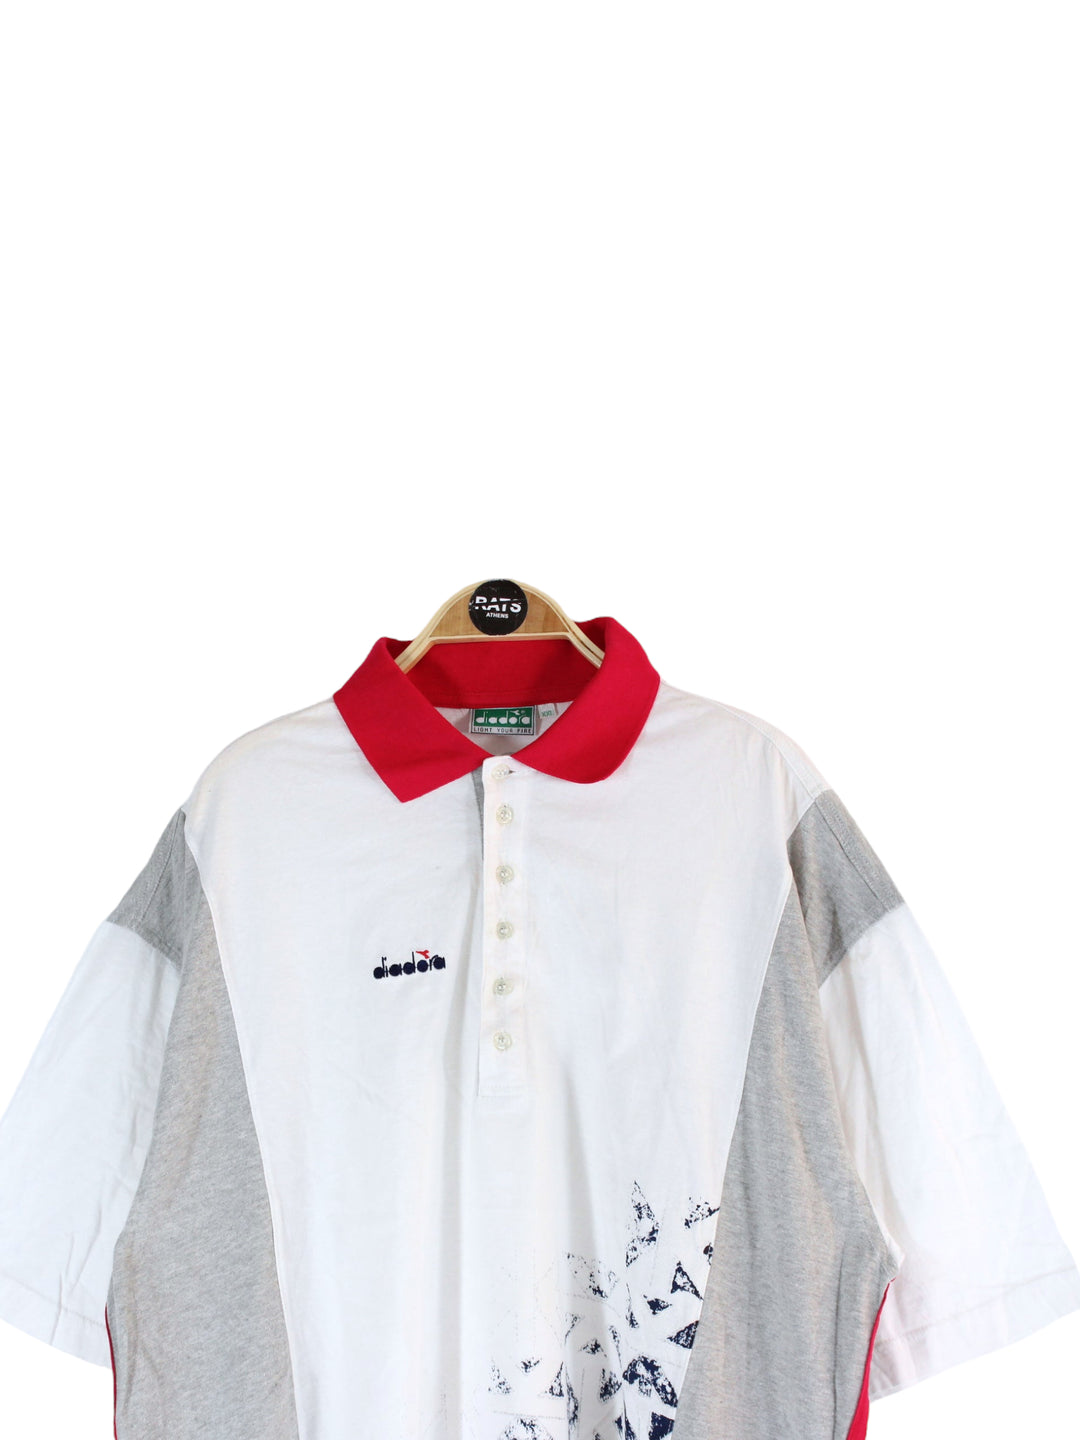 Diadora Polo T-Shirt Men's XXL